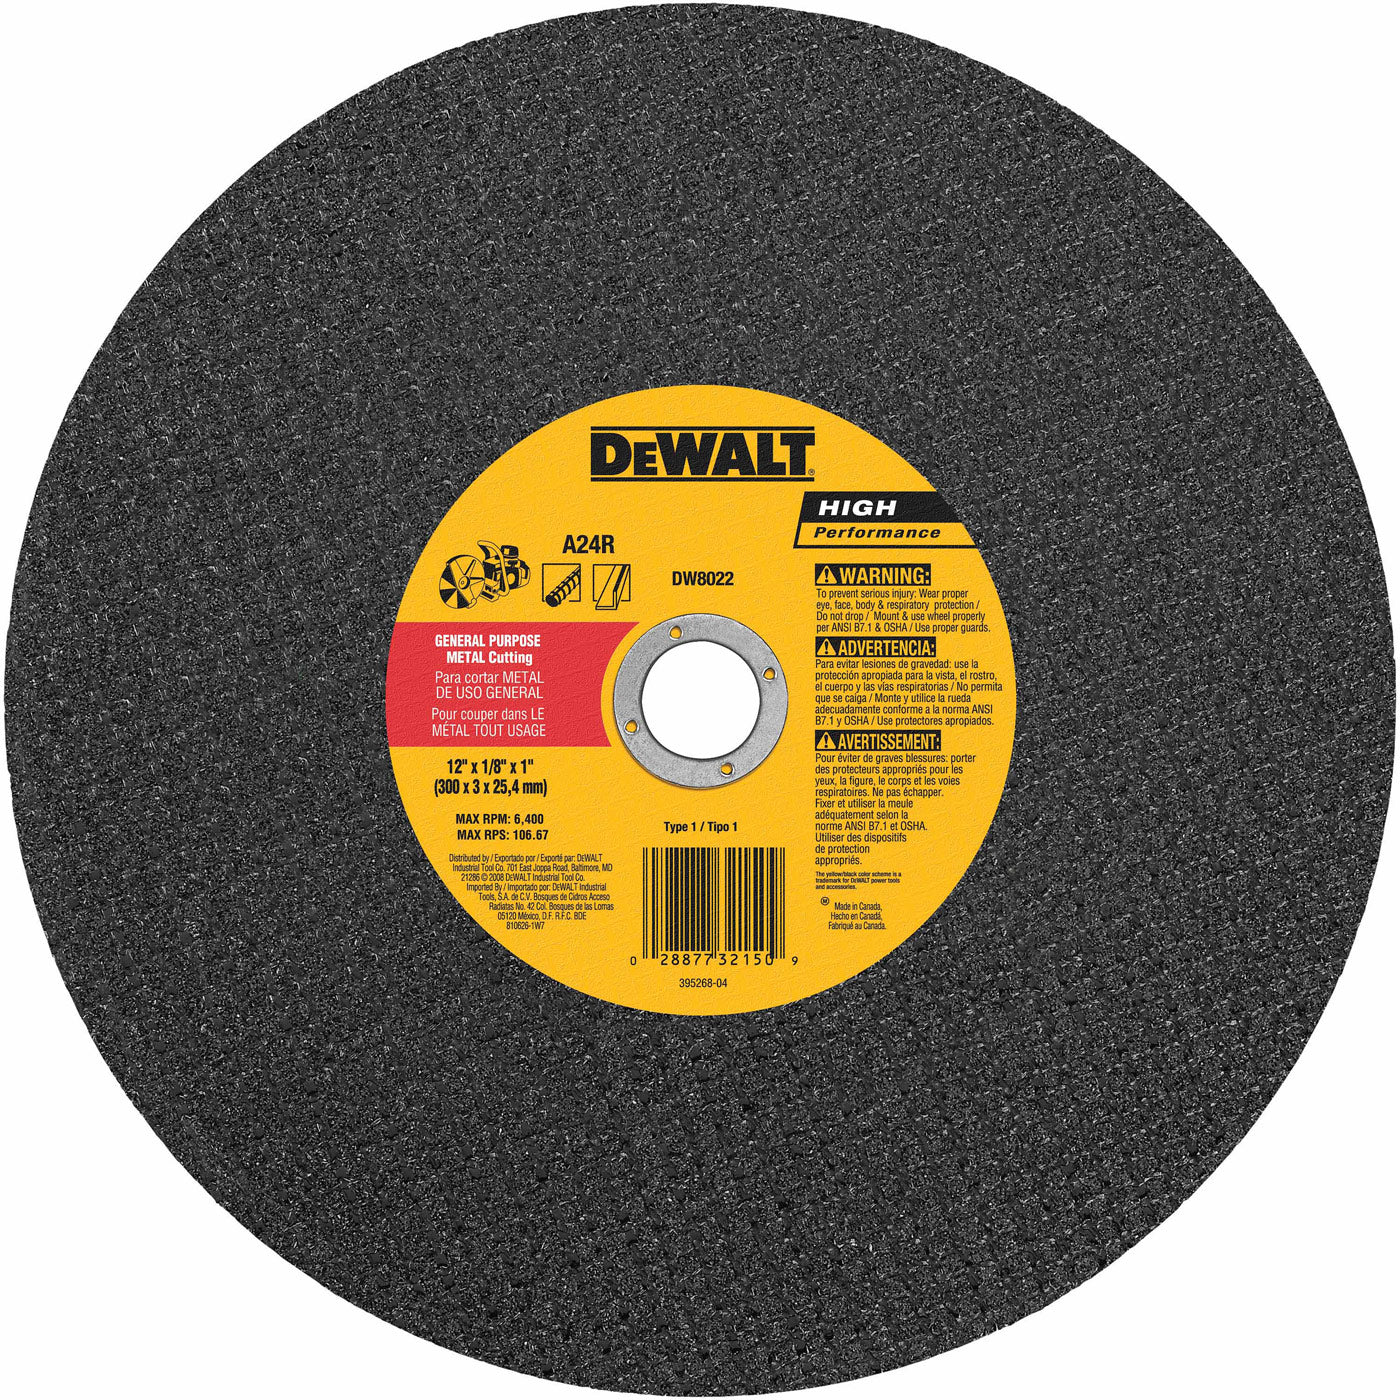 DeWalt DW8022 12" x 1/8" x 1" Metal Cutting High Speed Cut-Off Wheel